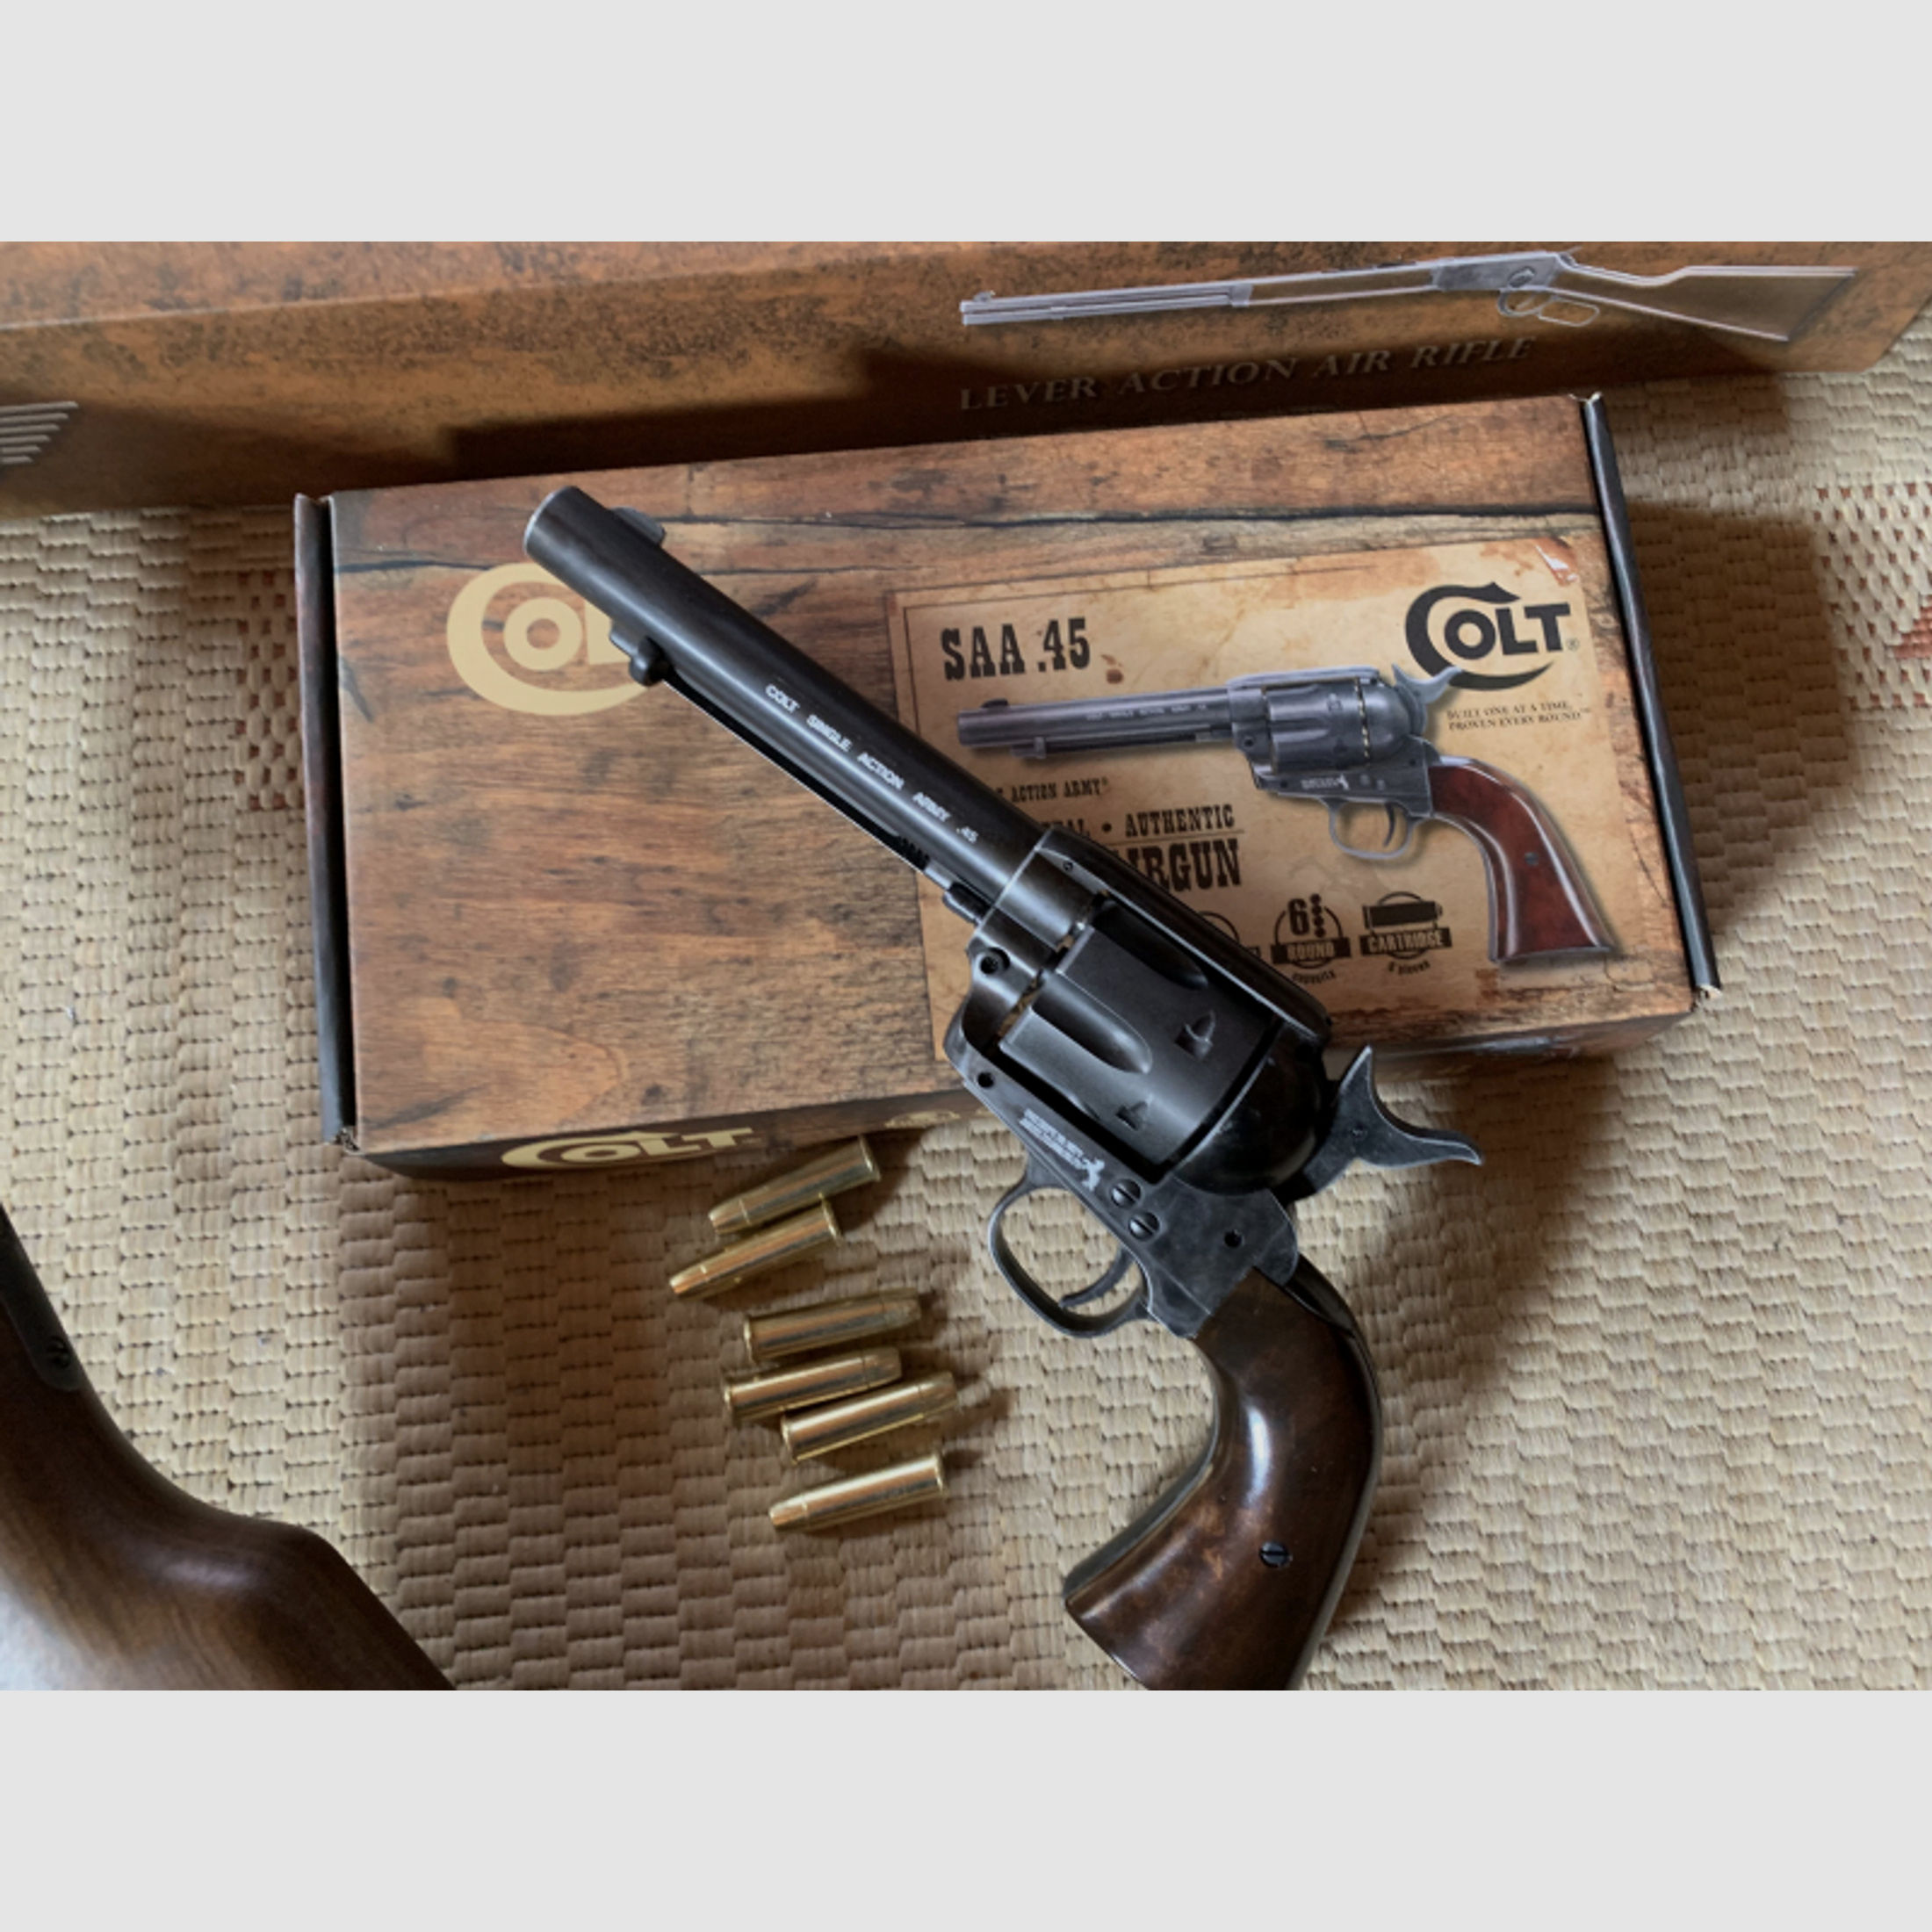 CO2 Waffen: zwei Colt SAA 45 cal. 4,5 mm in Nickel und Antique Finish + Cowboy Rifle auch 4,5 mm